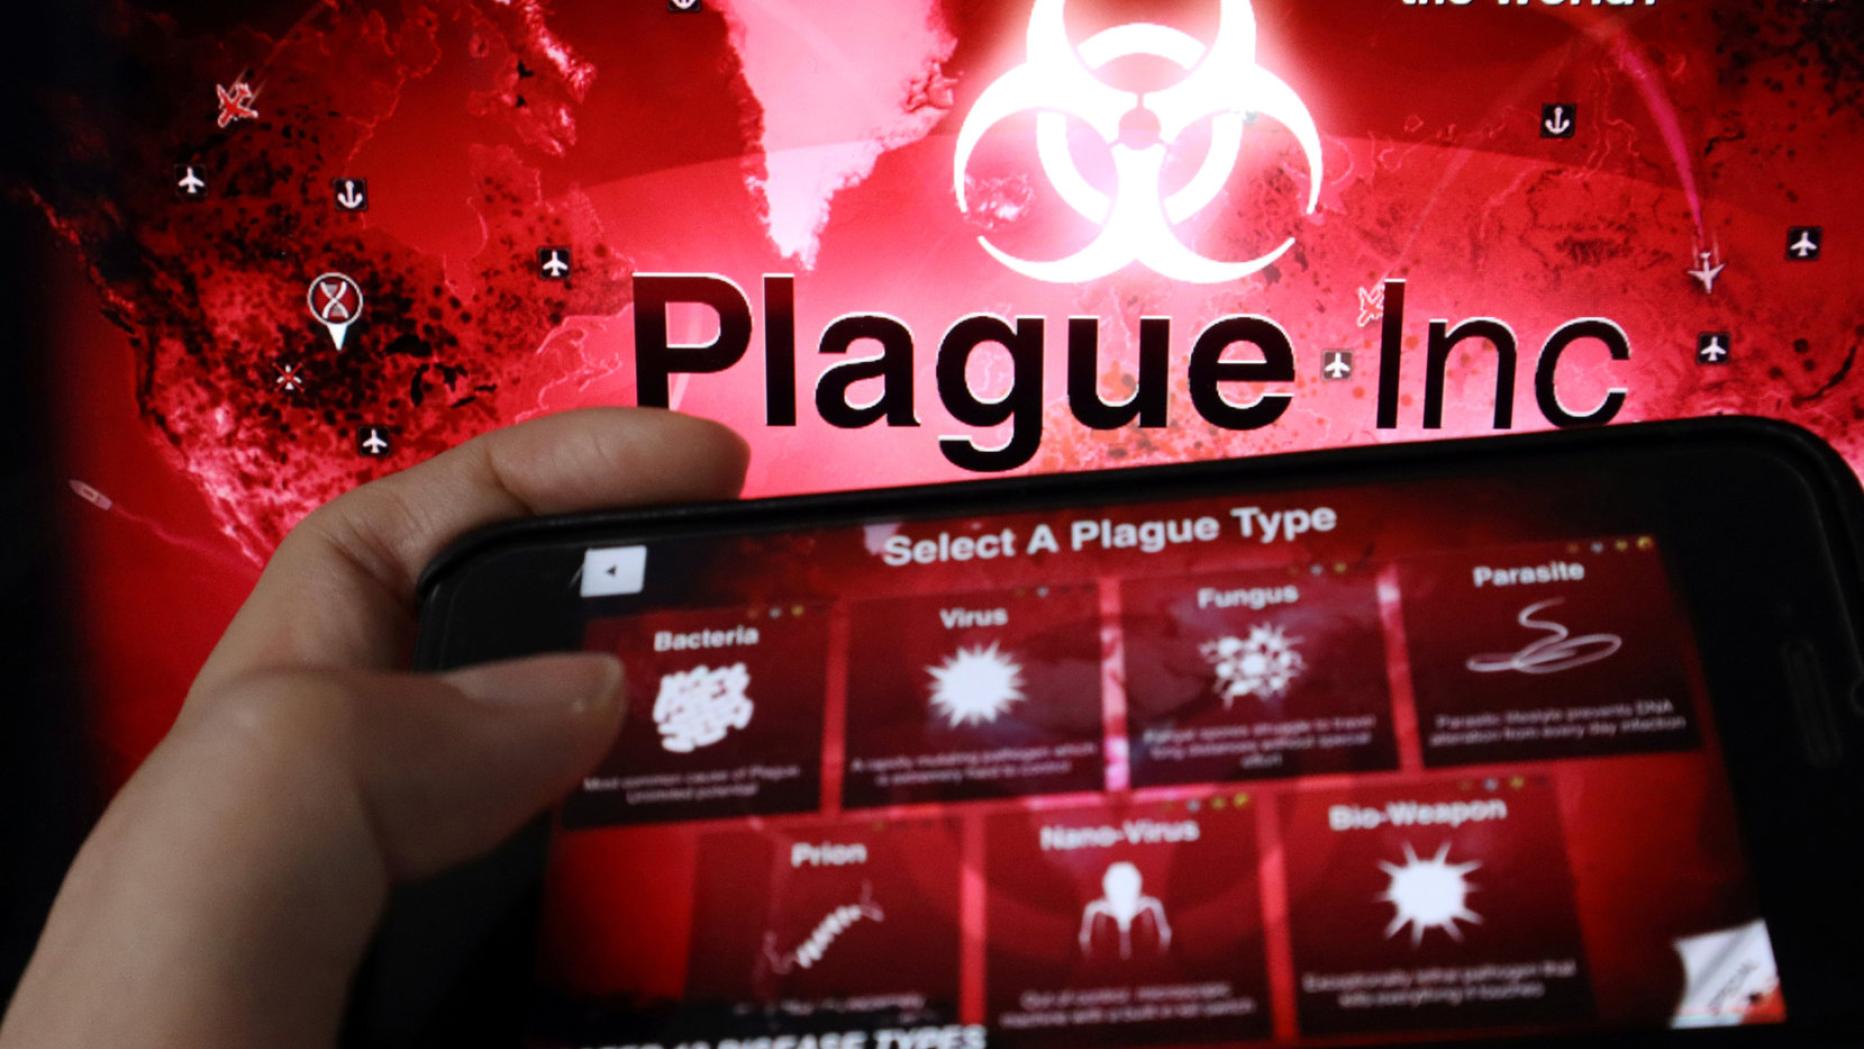 Игра inc вирус. Игра плагуе Инк. Игра про распространение вируса. Plague Inc компьютерные игры о вирусных эпидемиях. Можно играть 2 в Plague Inc.